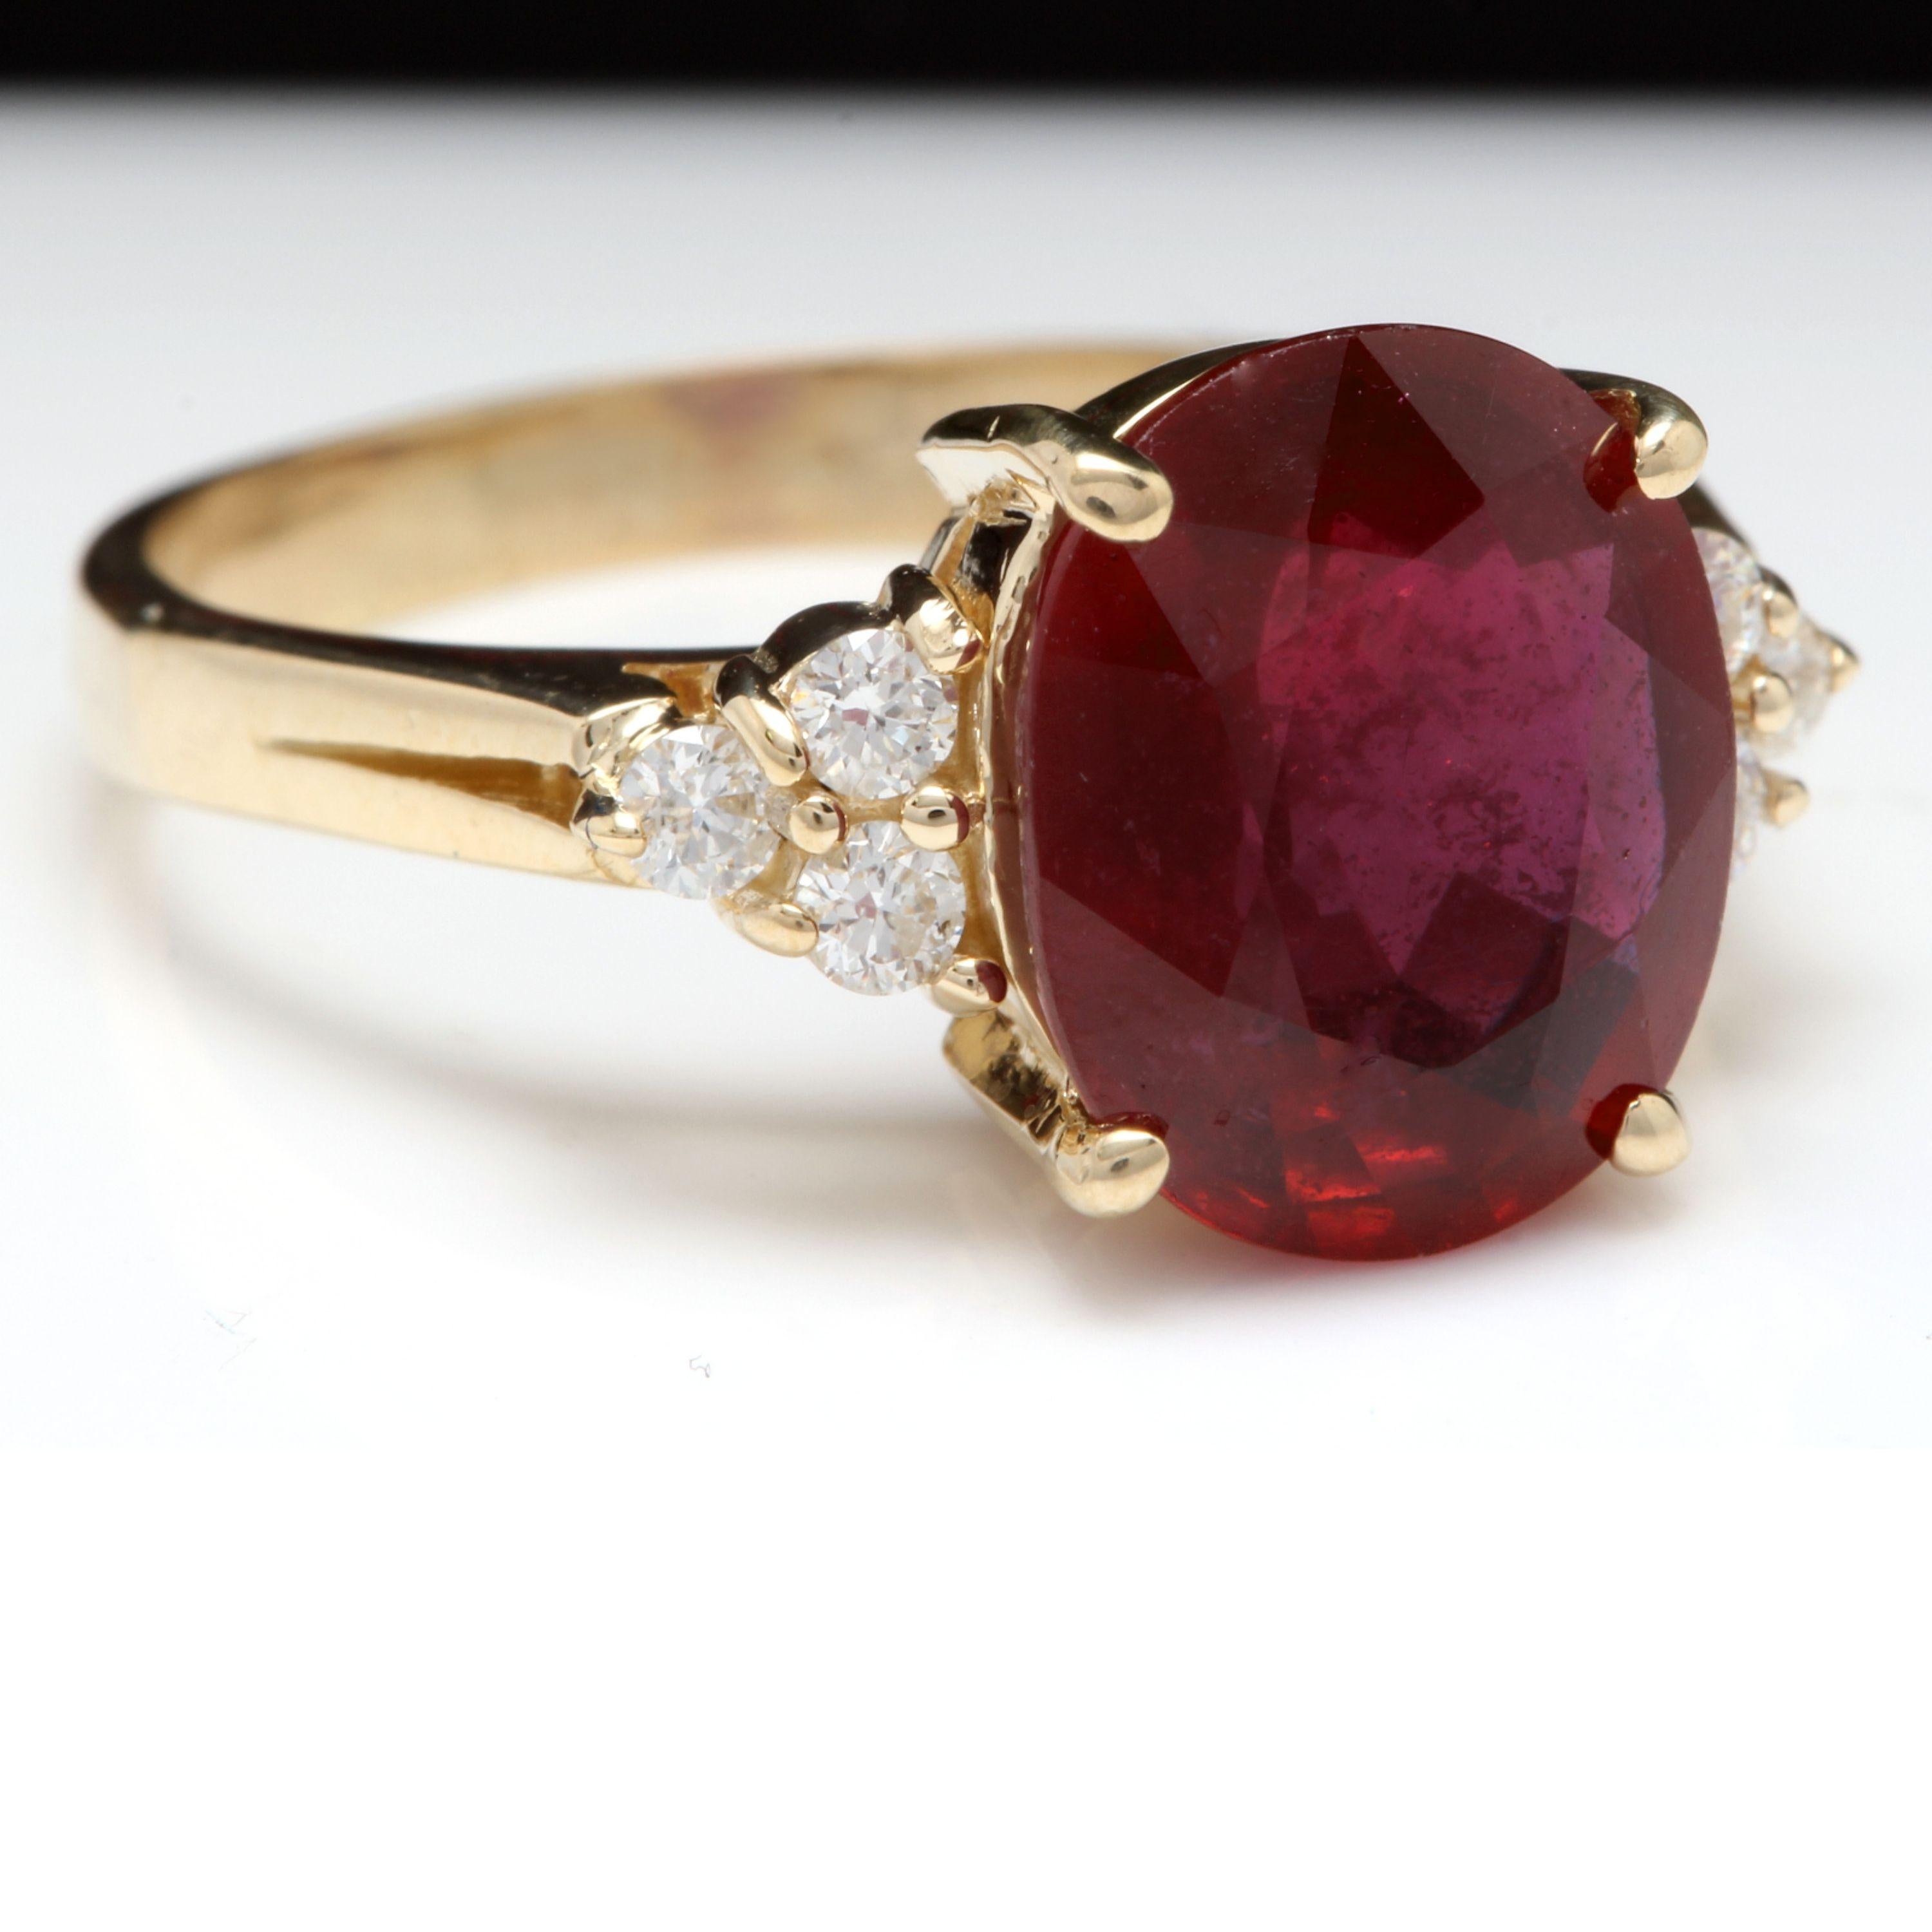 6.50 Karat Beeindruckender roter Rubin und Diamant 14K Gelbgold Ring

Total Red Ruby Gewicht ist: 6.25 Karat

Rubin Maße: 11x 9mm (Bleiglas gefüllt)

Natürliche runde Diamanten Gewicht: .25 Karat (Farbe G-H / Reinheit SI1-SI2)

Ringgröße: 6 (auf